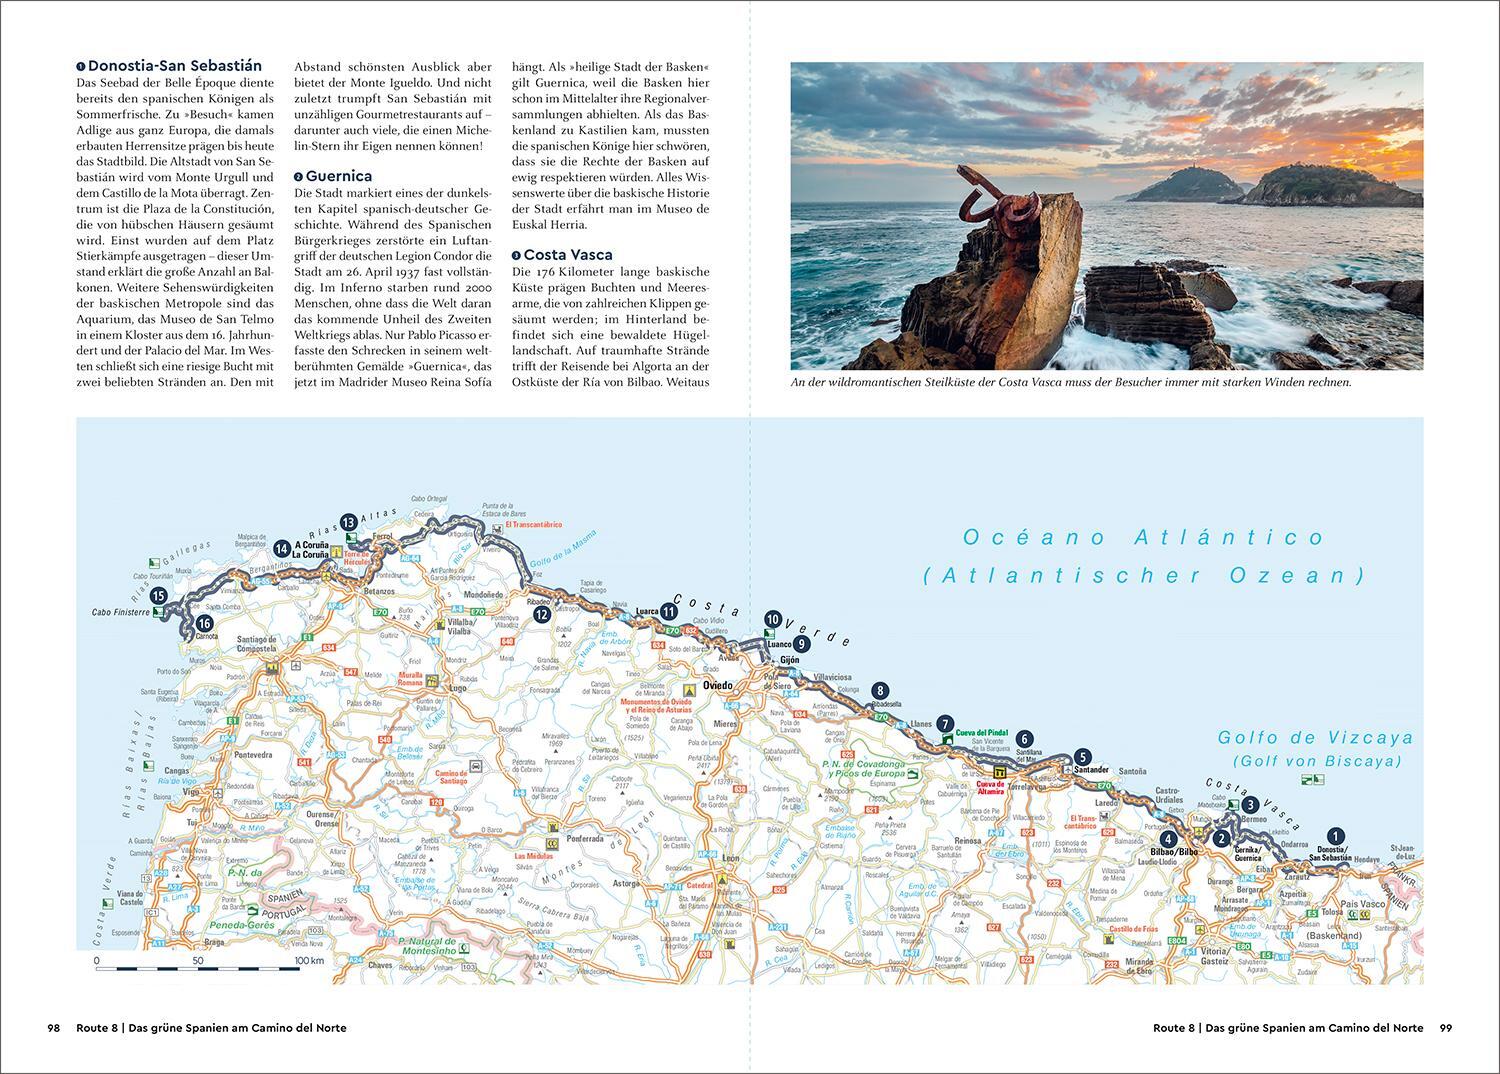 Bild: 9783969651520 | KUNTH Unterwegs Europas schönste Küsten | Taschenbuch | 344 S. | 2023